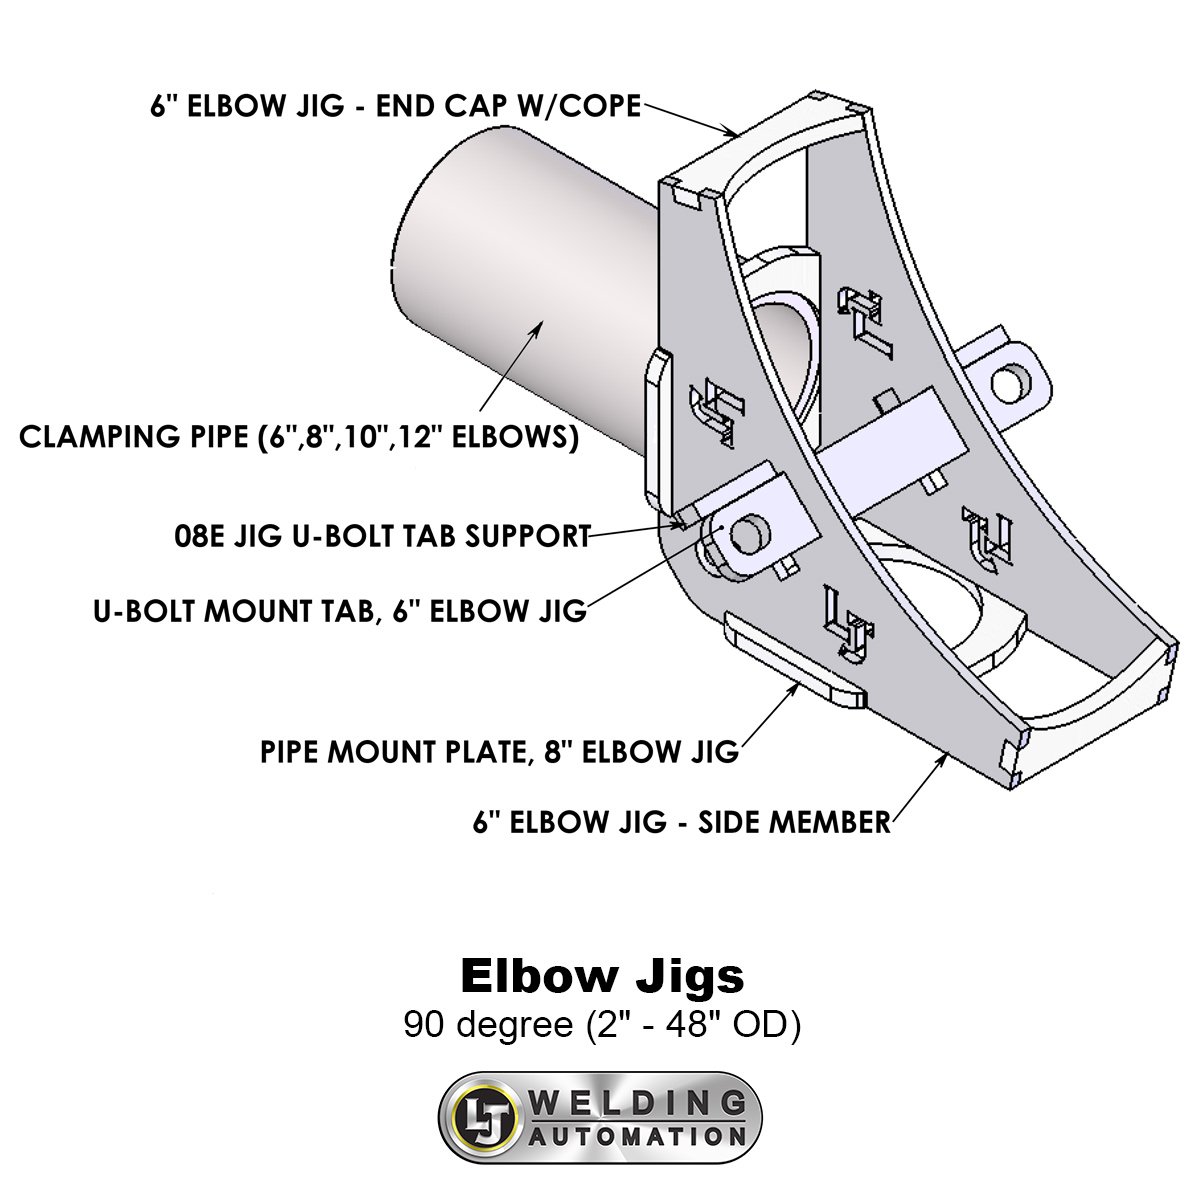 02-MAG-Elbow-Jigs-1200sq